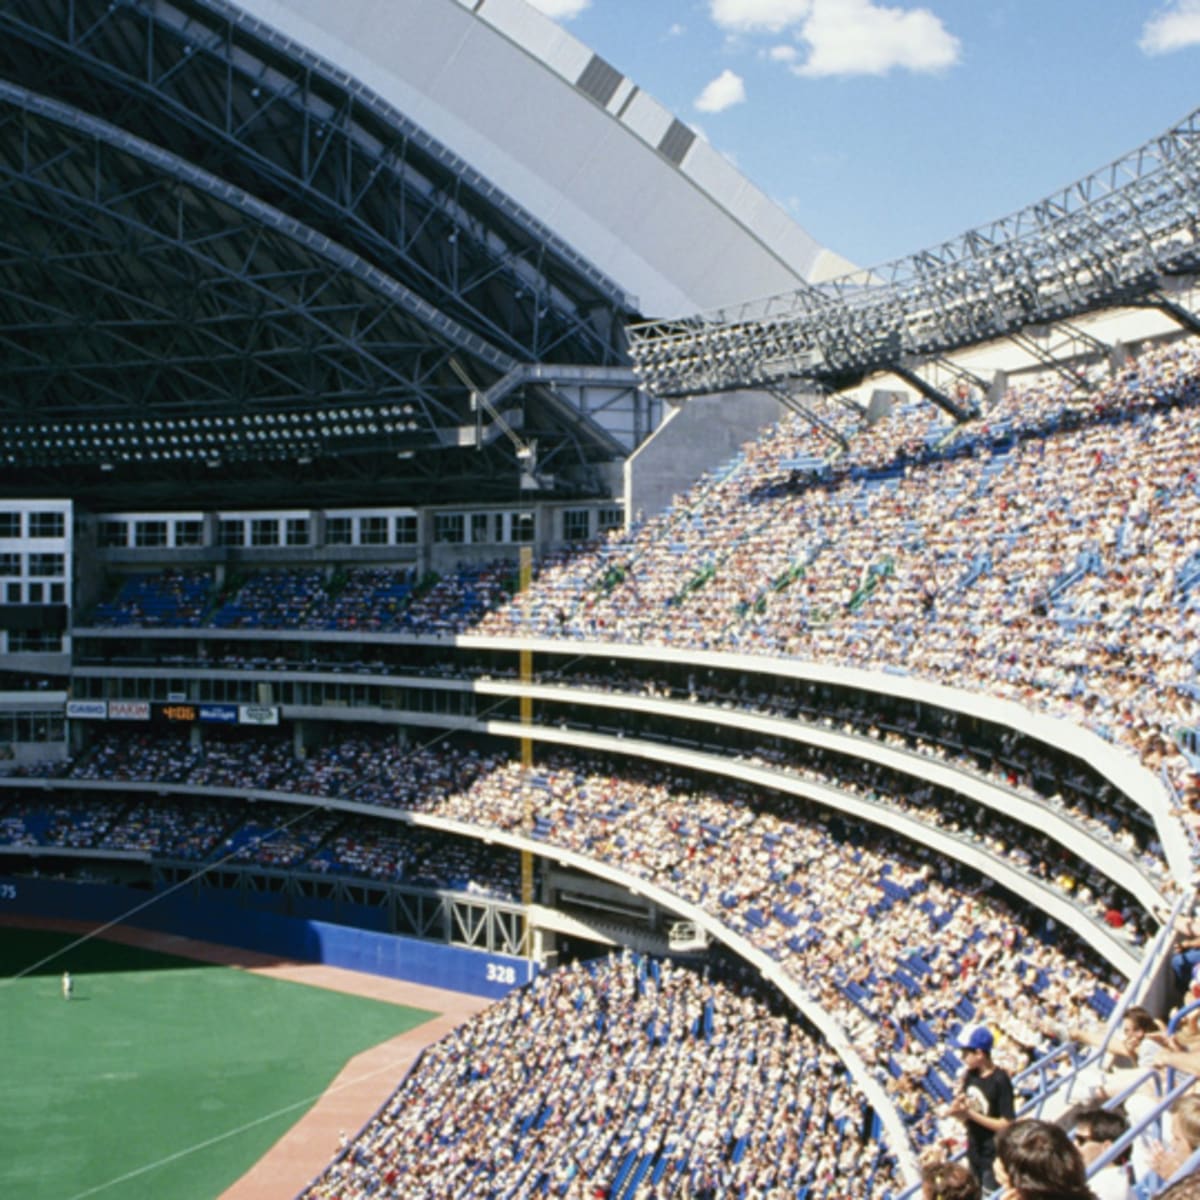 Rogers Center Panorama - Toronto Blue Jays - LF View - Roof Open : Augies  Panoramas, Baseball Stadium Panoramas, New York Mets Panoramas, Landscape  and Travel Panoramas